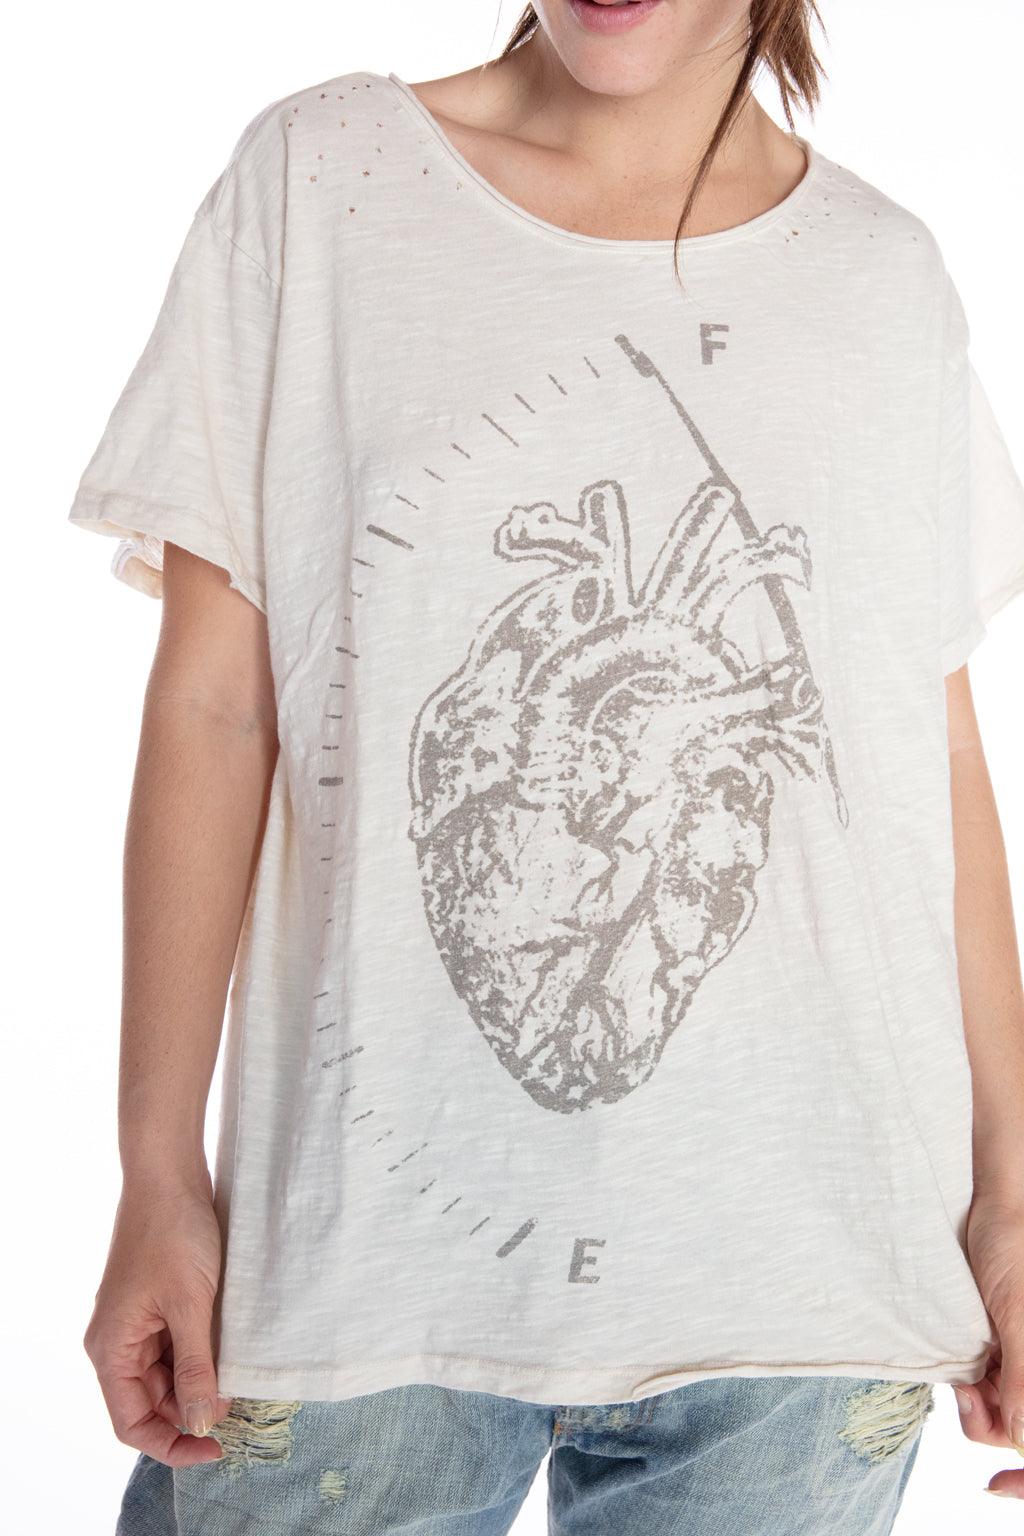 Paisley Peach Boutique - Louis Vuitton heart t-shirt 🤎💗 $28